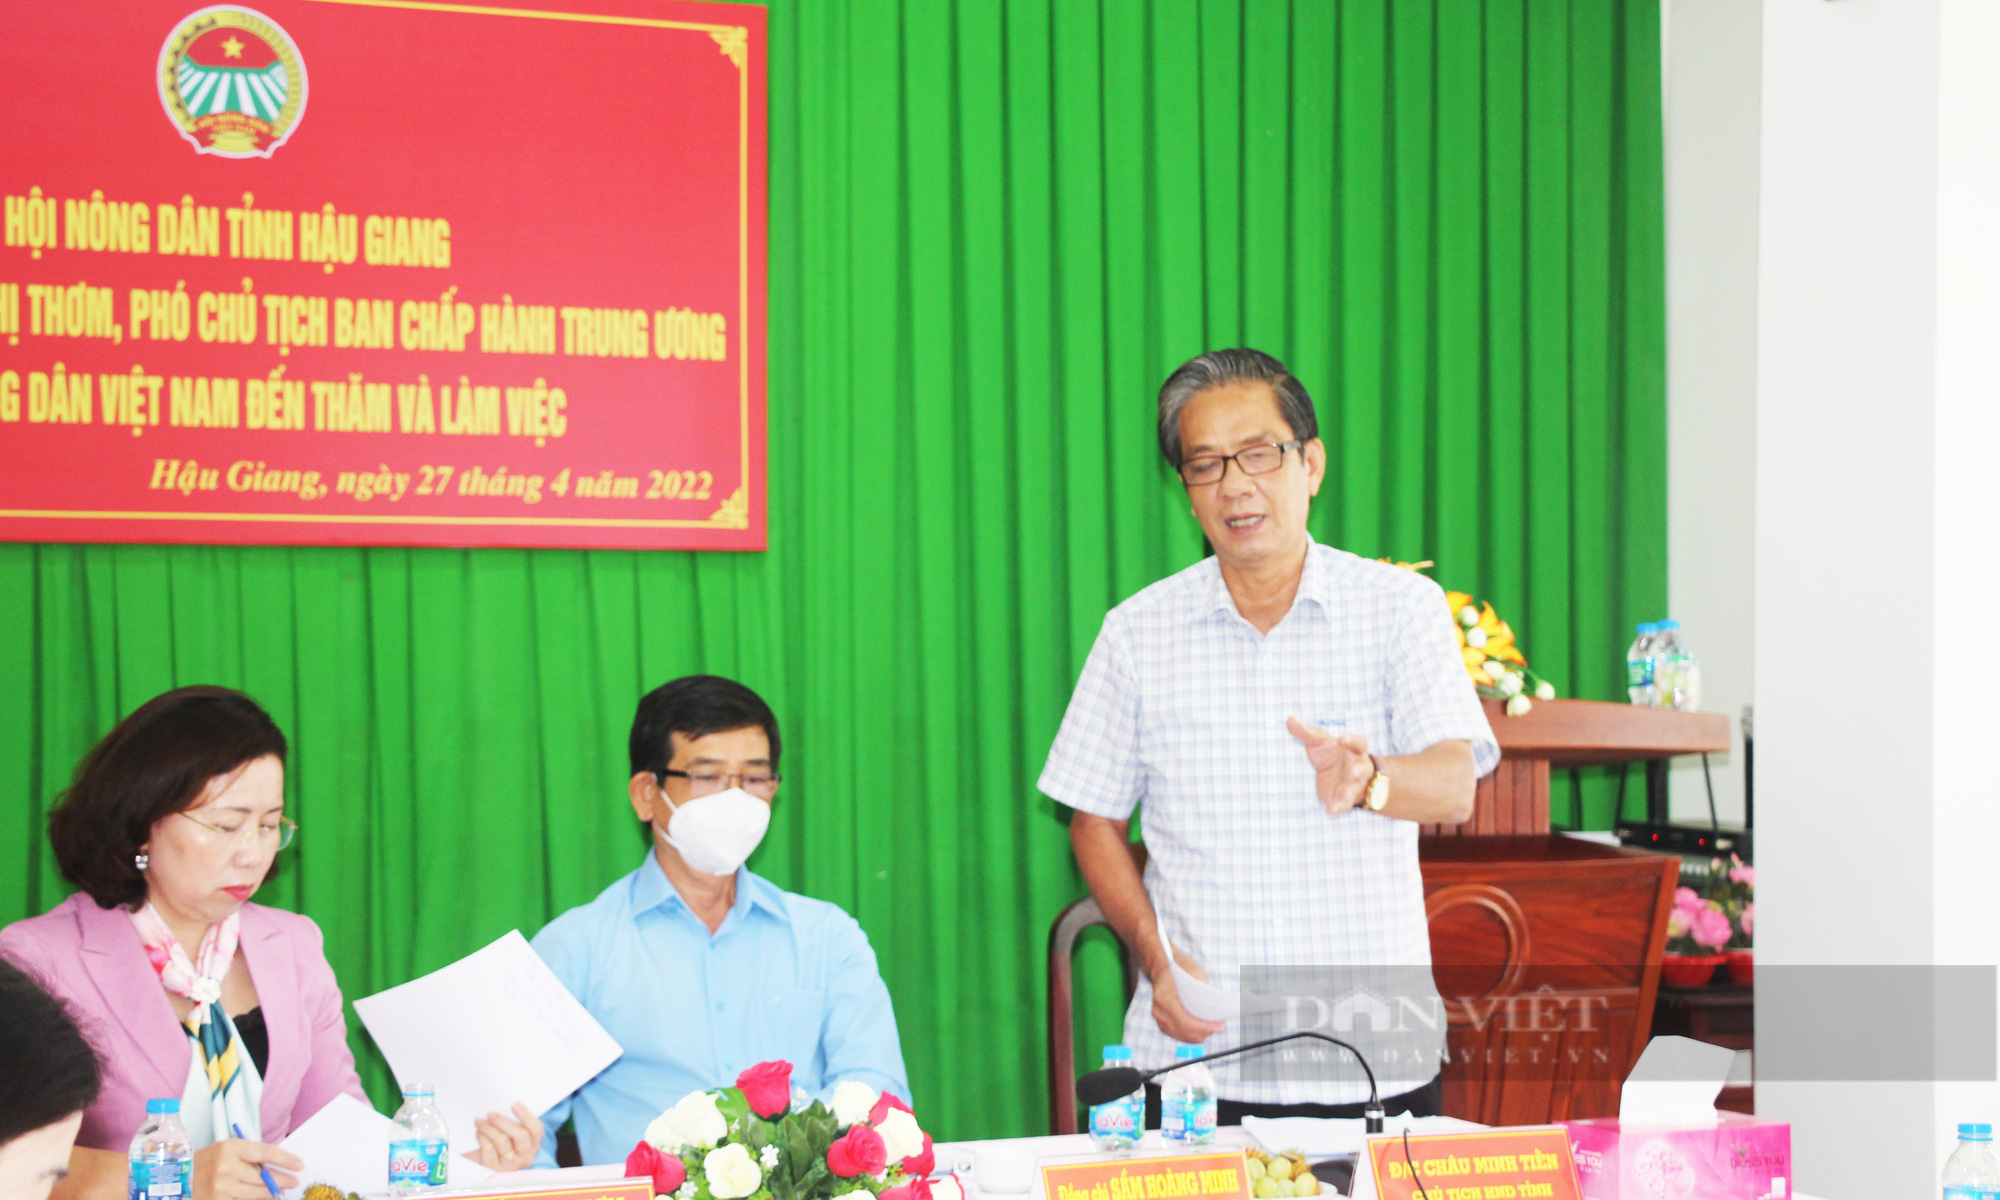 Phó Chủ tịch Hội NDVN Bùi Thị Thơm làm việc tại Hậu Giang: Cần quan tâm hơn đến tiêu thụ nông sản cho nông dân- Ảnh 2.